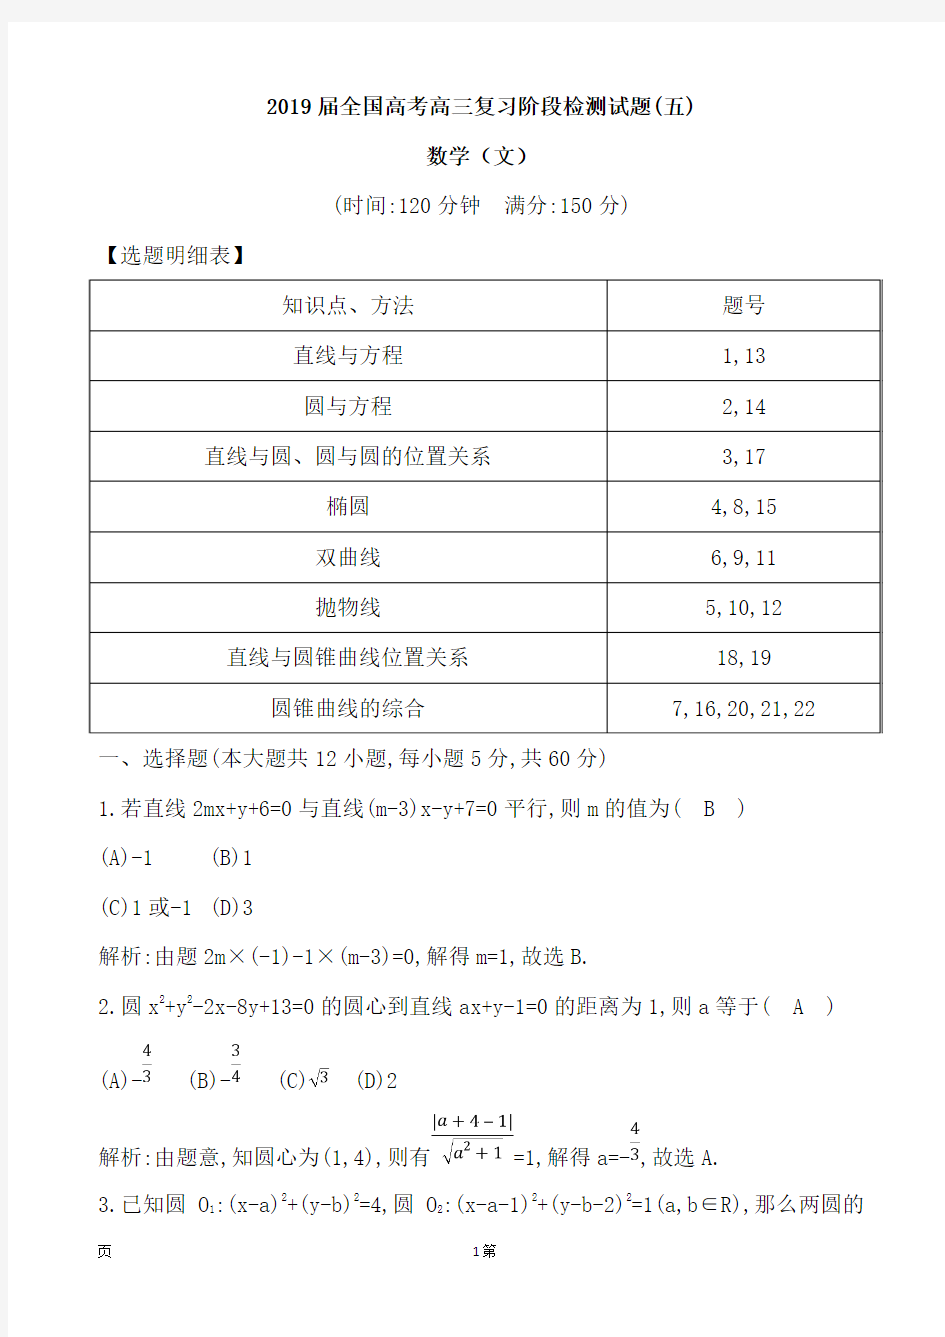 2019届全国高考高三复习阶段检测试题(五)数学(文)(解析版)